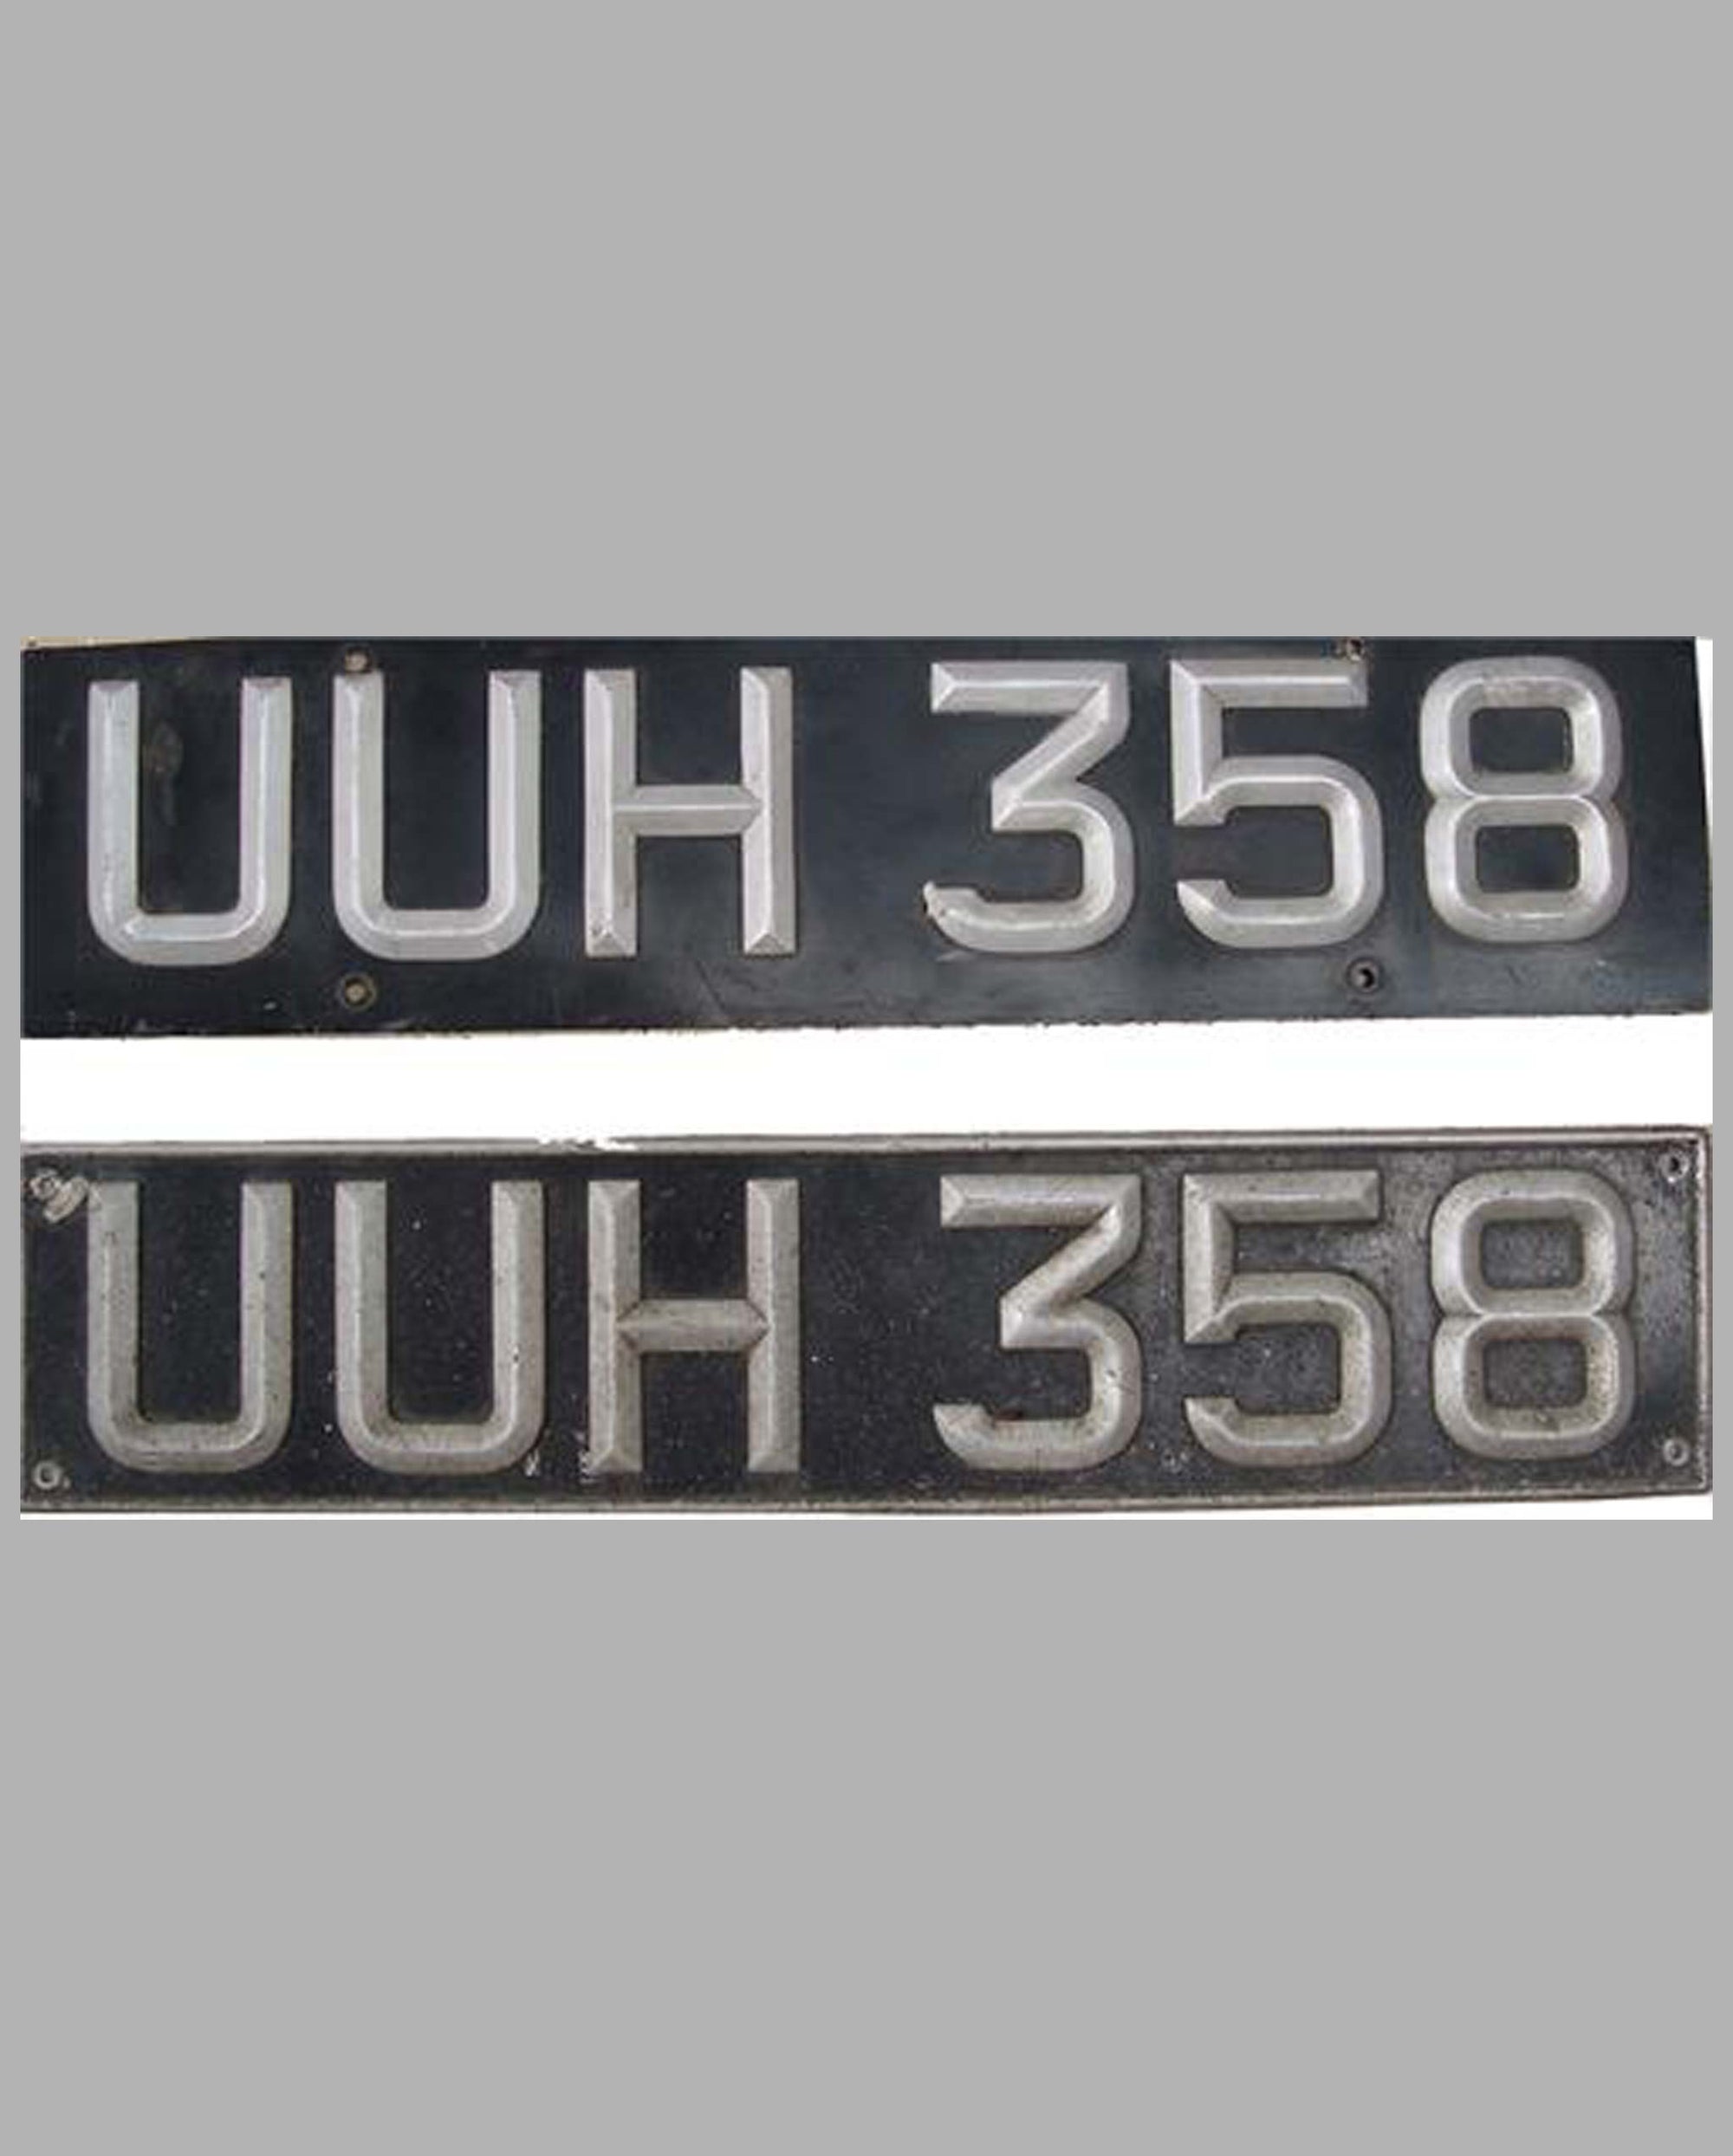 Pair of British License Plates UUH 358